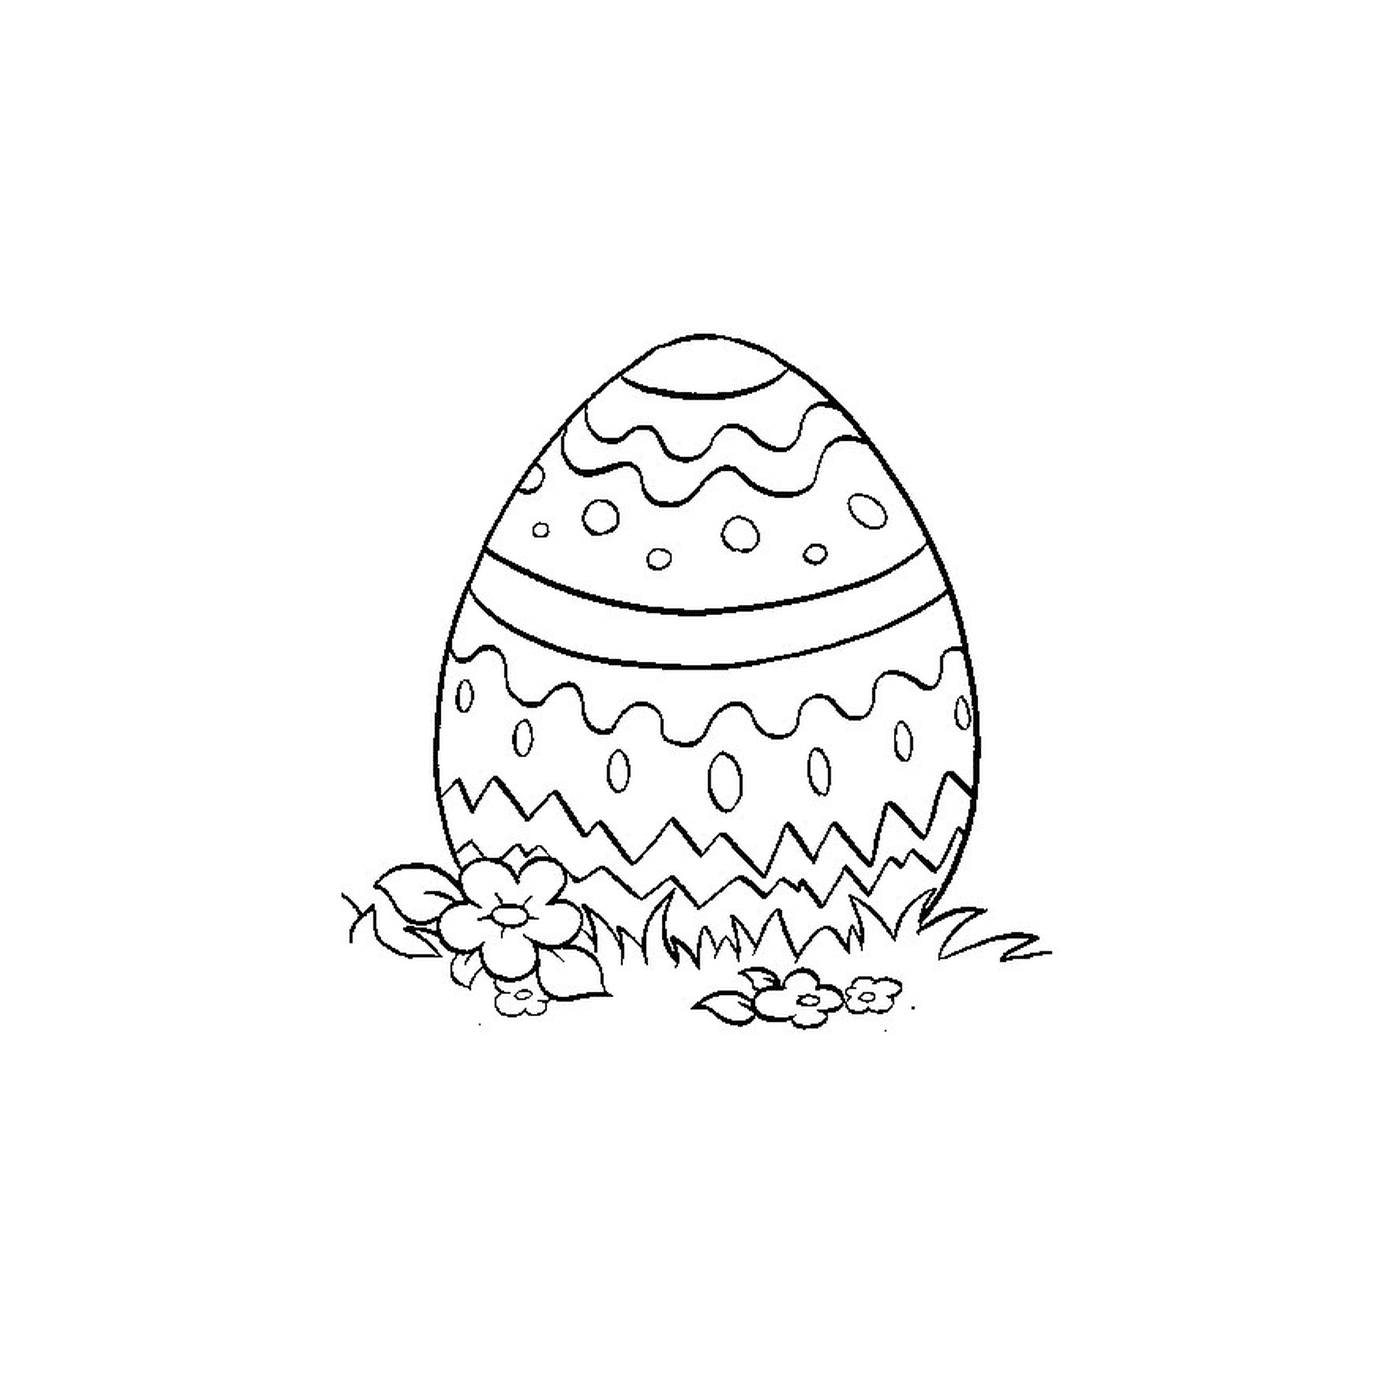  复活节鸡蛋落草地 